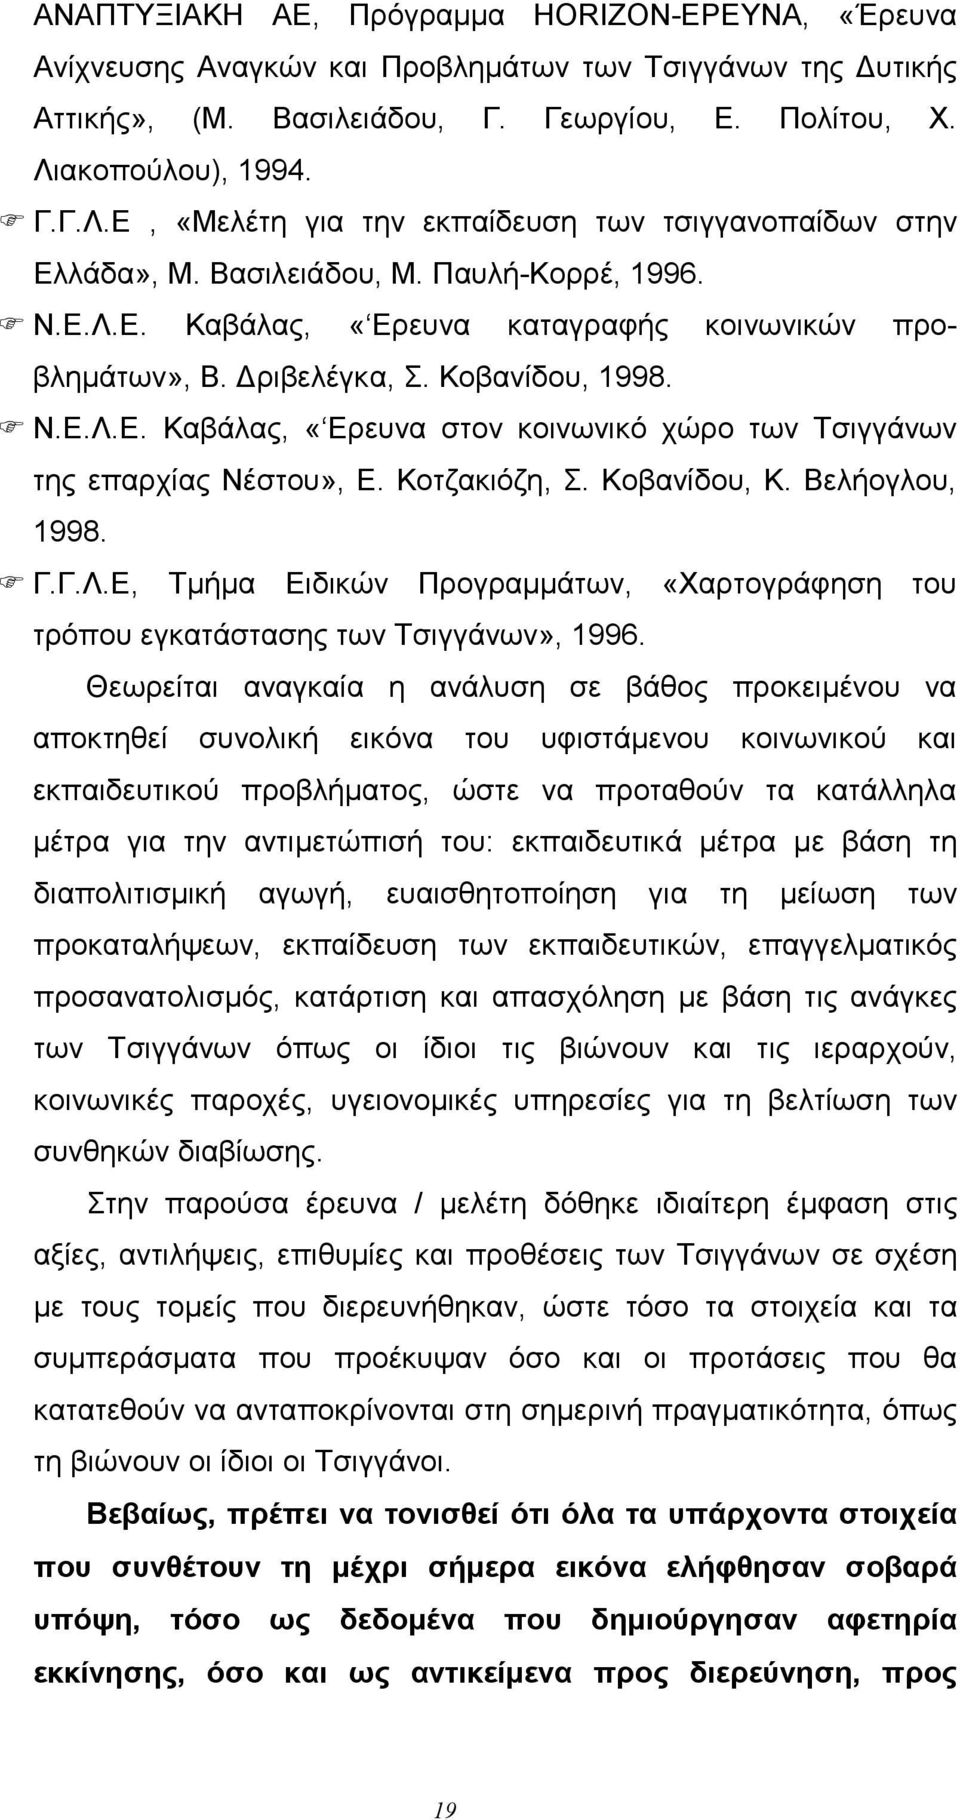 ριβελέγκα, Σ. Κοβανίδου, 1998. F Ν.Ε.Λ.Ε. Καβάλας, «Ερευνα στον κοινωνικό χώρο των Τσιγγάνων της επαρχίας Νέστου», Ε. Κοτζακιόζη, Σ. Κοβανίδου, Κ. Βελήογλου, 1998. F Γ.Γ.Λ.Ε, Τlήlα Ειδικών Προγραllάτων, «Χαρτογράφηση του τρόπου εγκατάστασης των Τσιγγάνων», 1996.